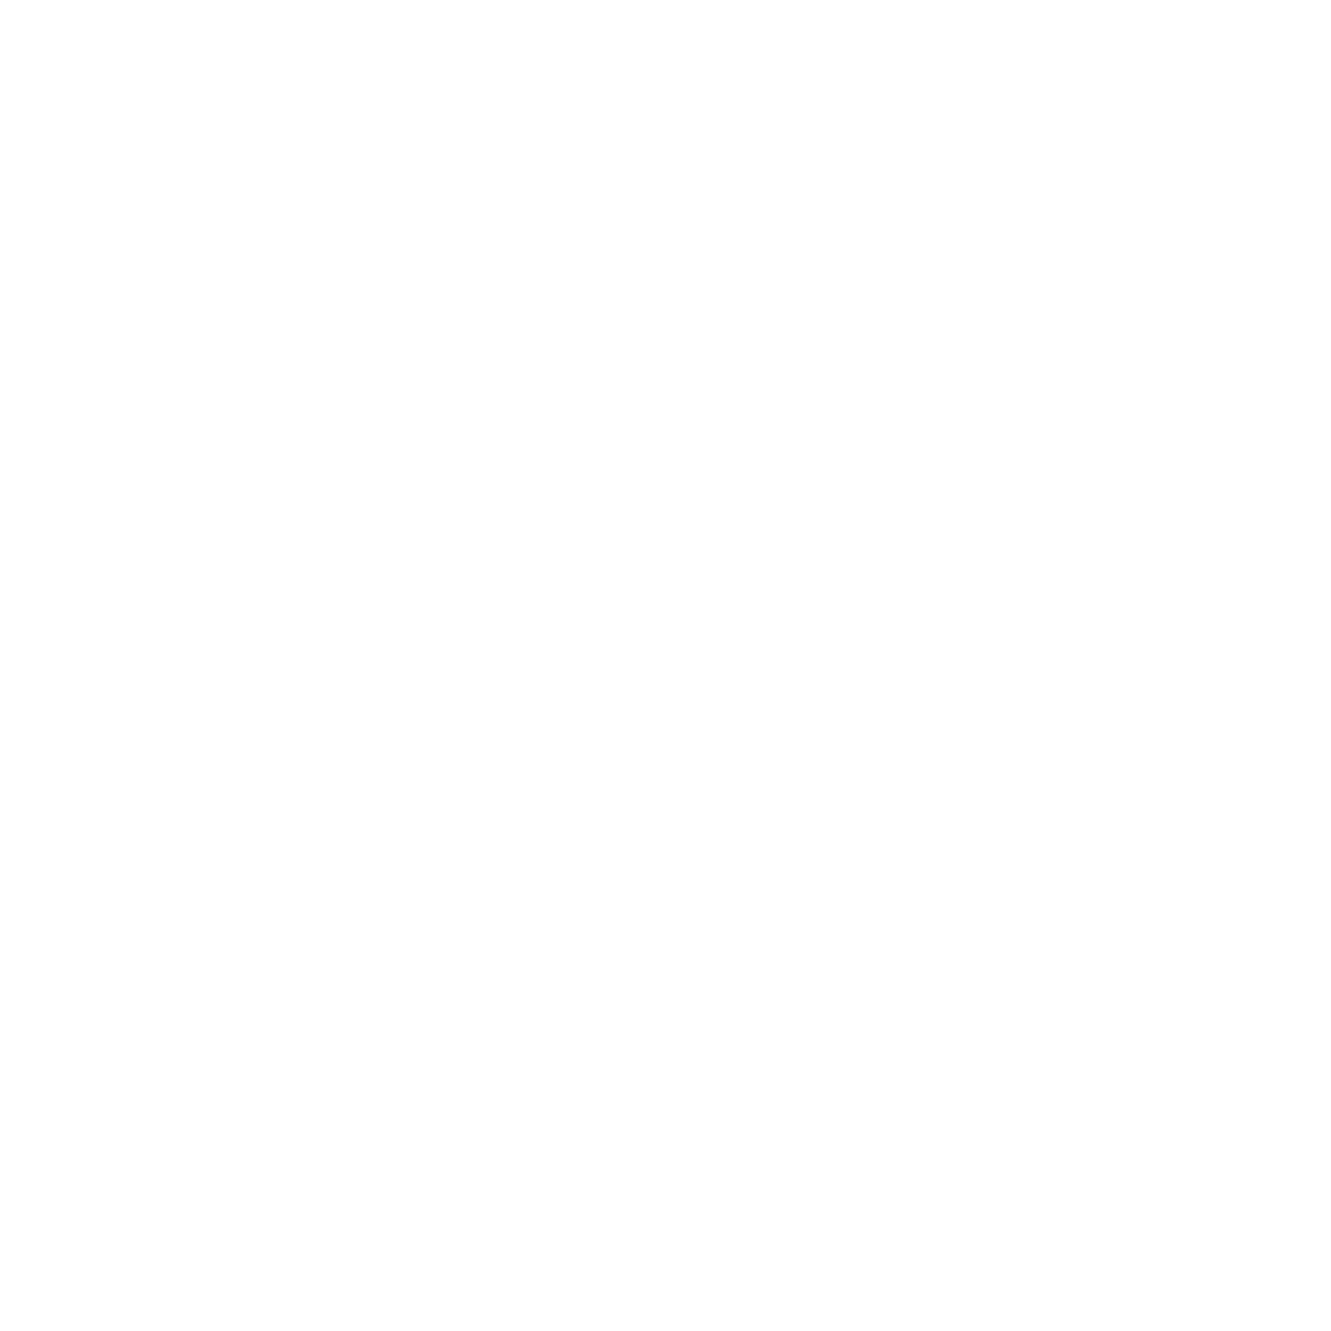 Kurzfilm Schule - Burgtheater Ratzeburg